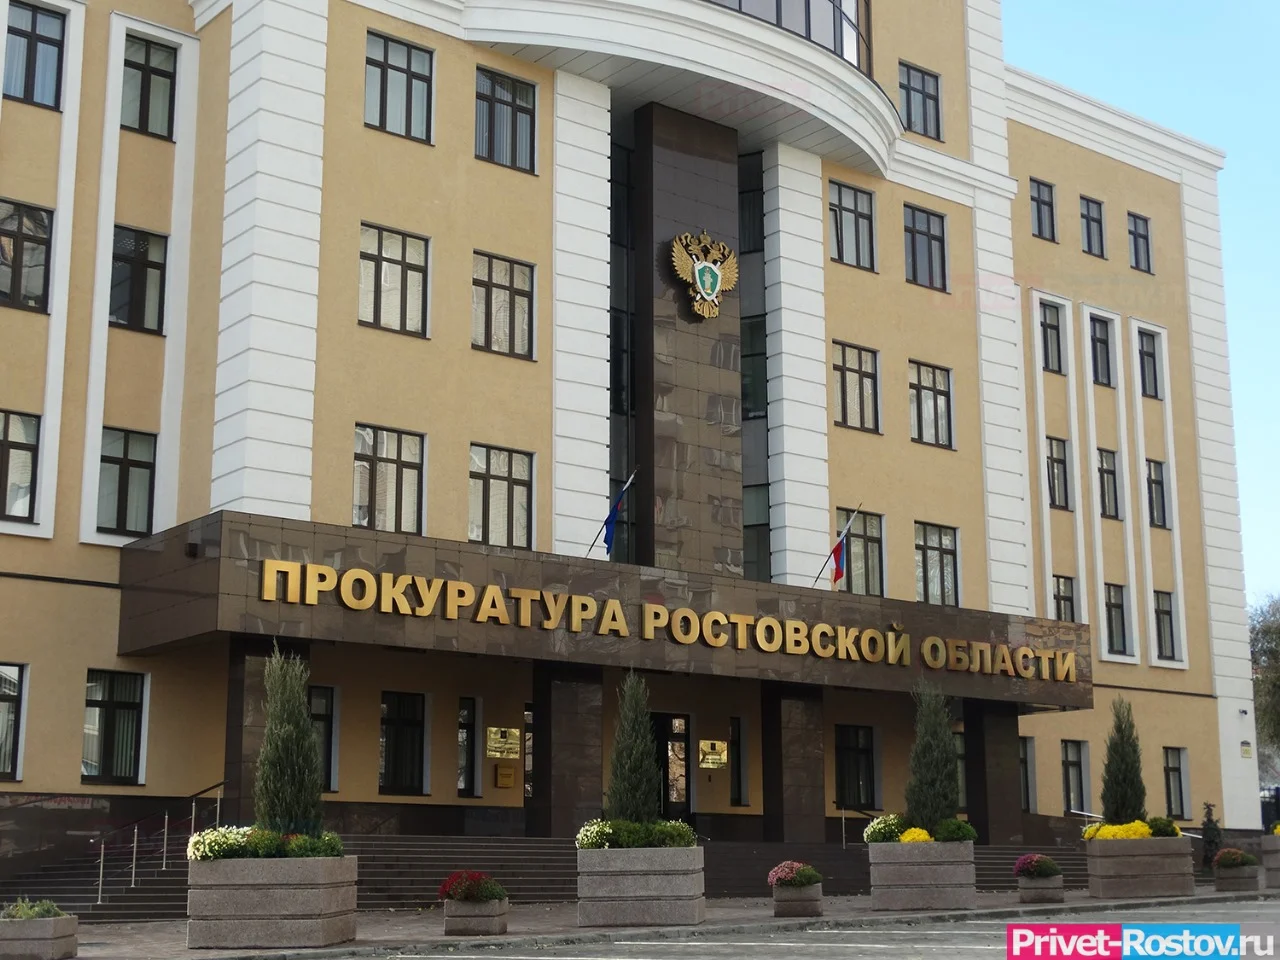 Прокуратура Ростовской области обратила внимание губернатора Голубева на права сирот